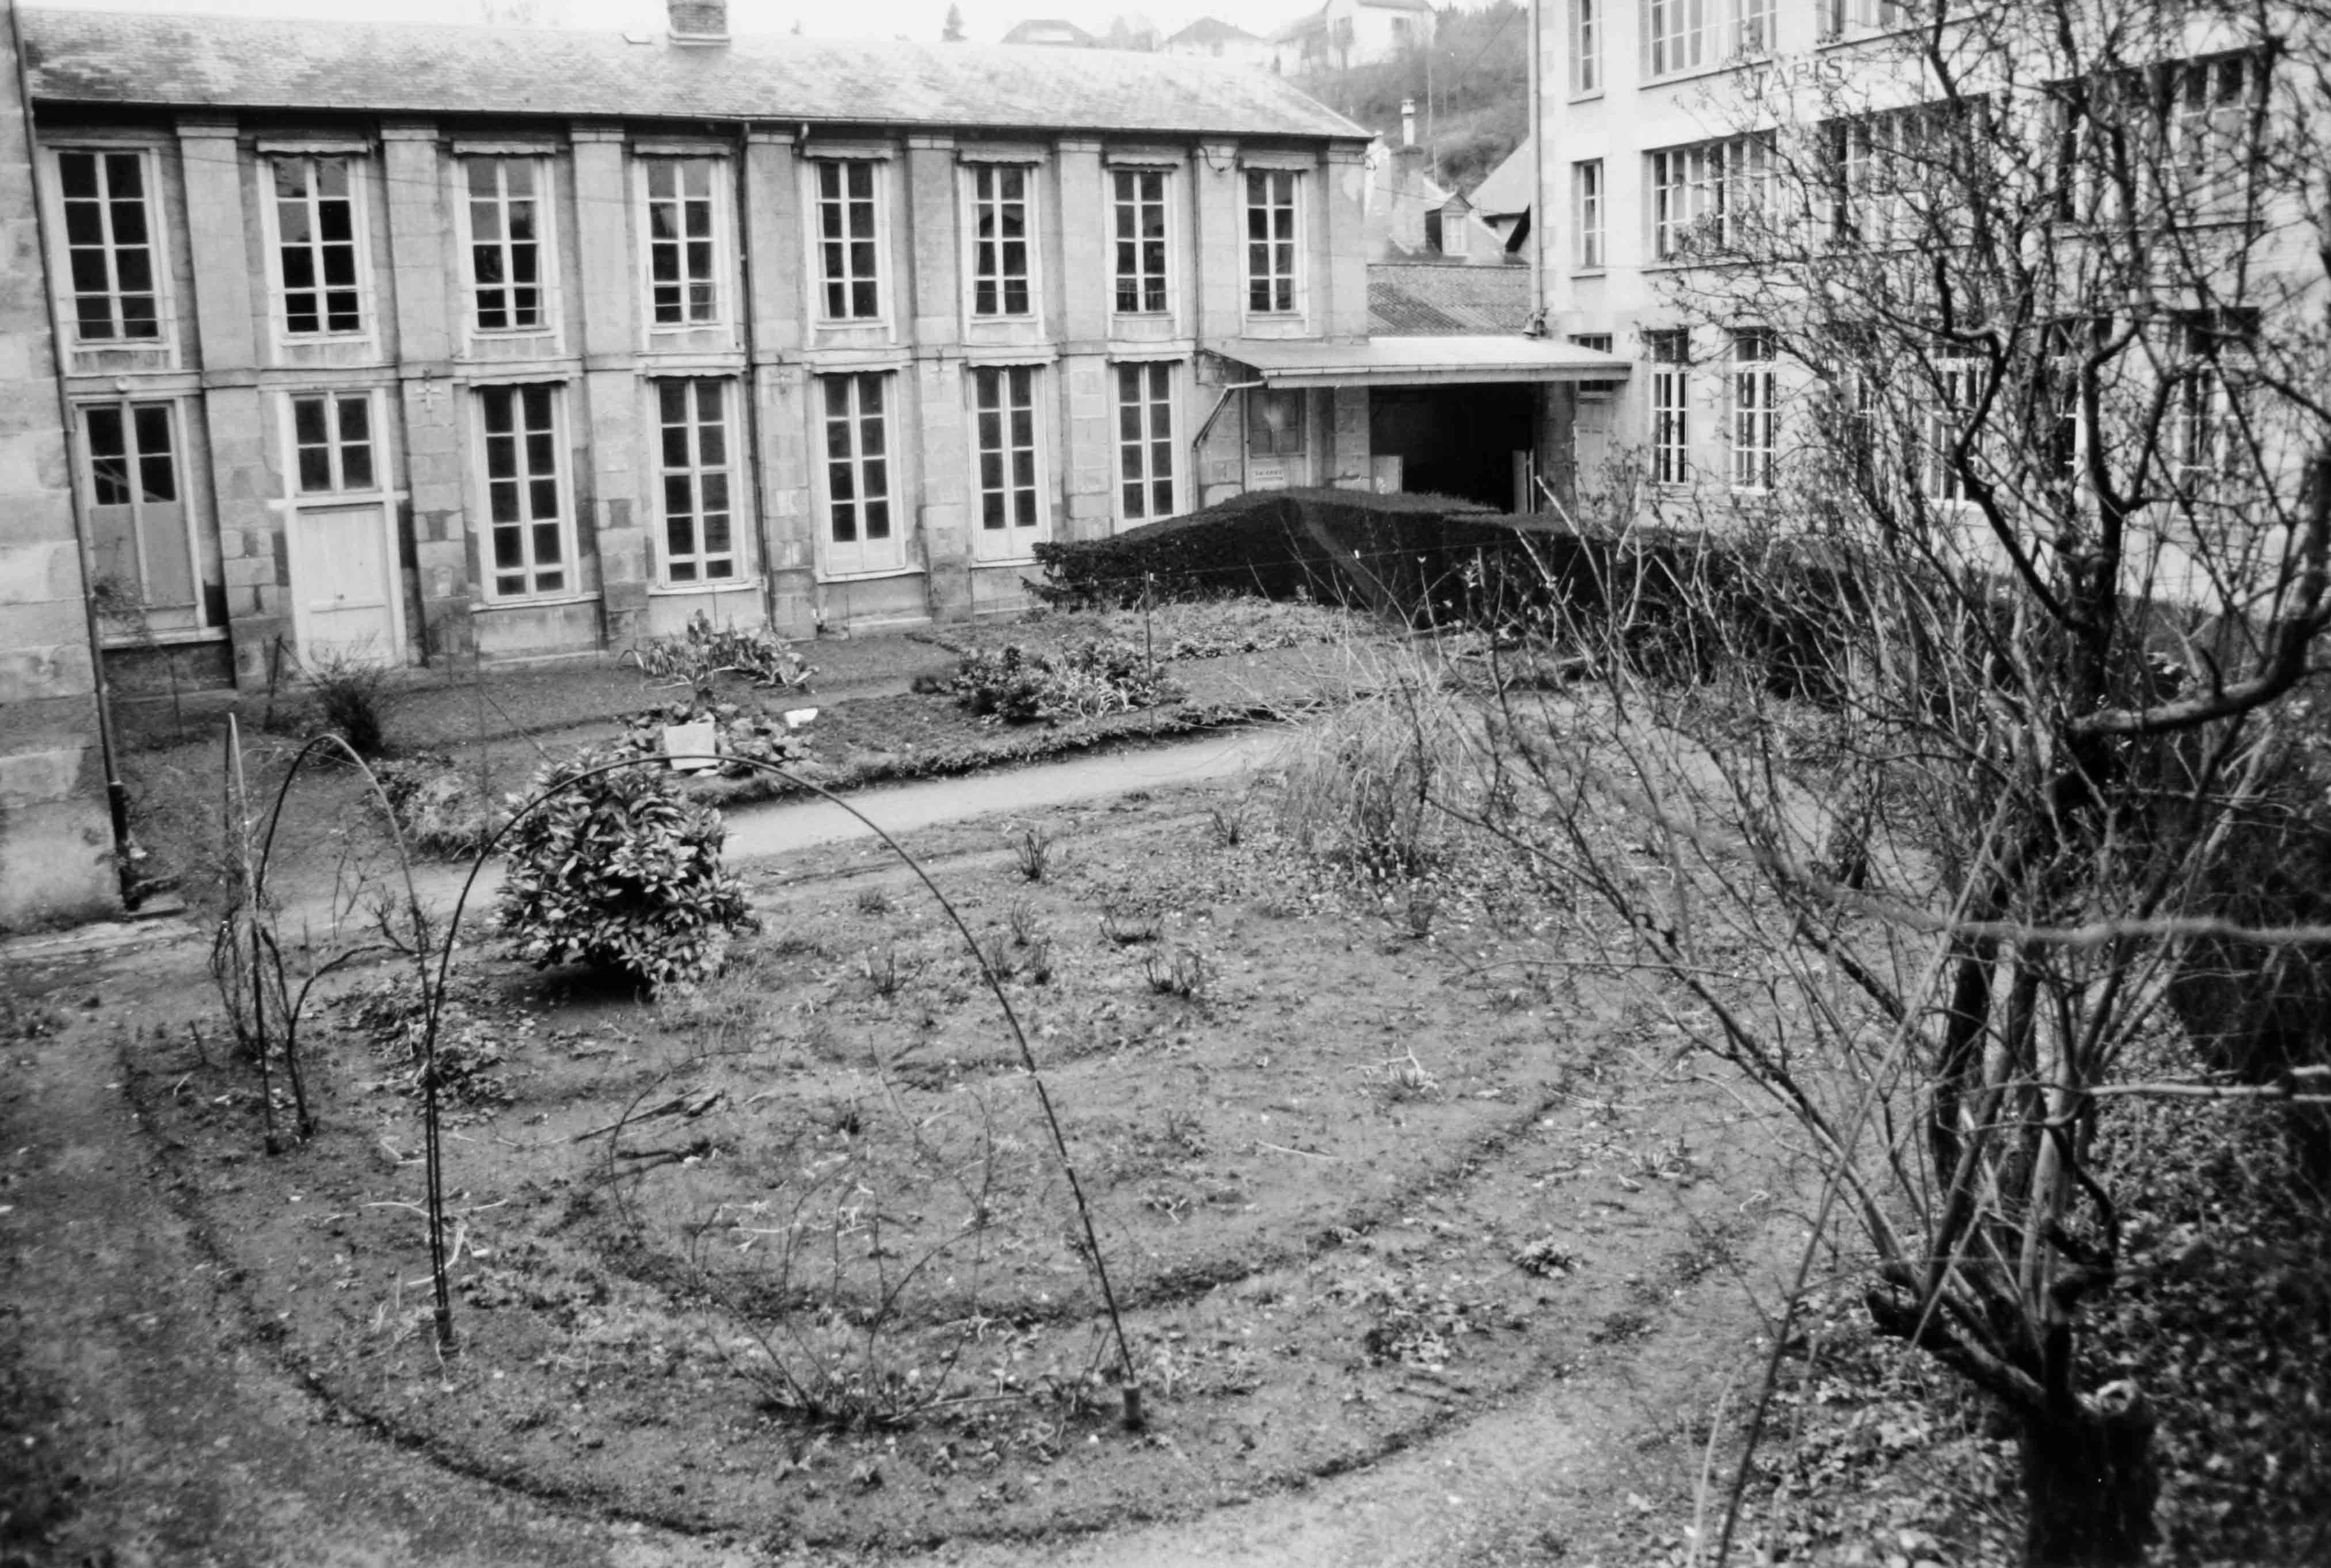 A l'ouest de la cour : les deux niveaux de la galerie d'exposition (aujourd'hui disparue) et les jardins de la manufacture (reportage photographique de L. Yeghicheyan, 1992, Aubusson, Musée départemental de la Tapisserie)